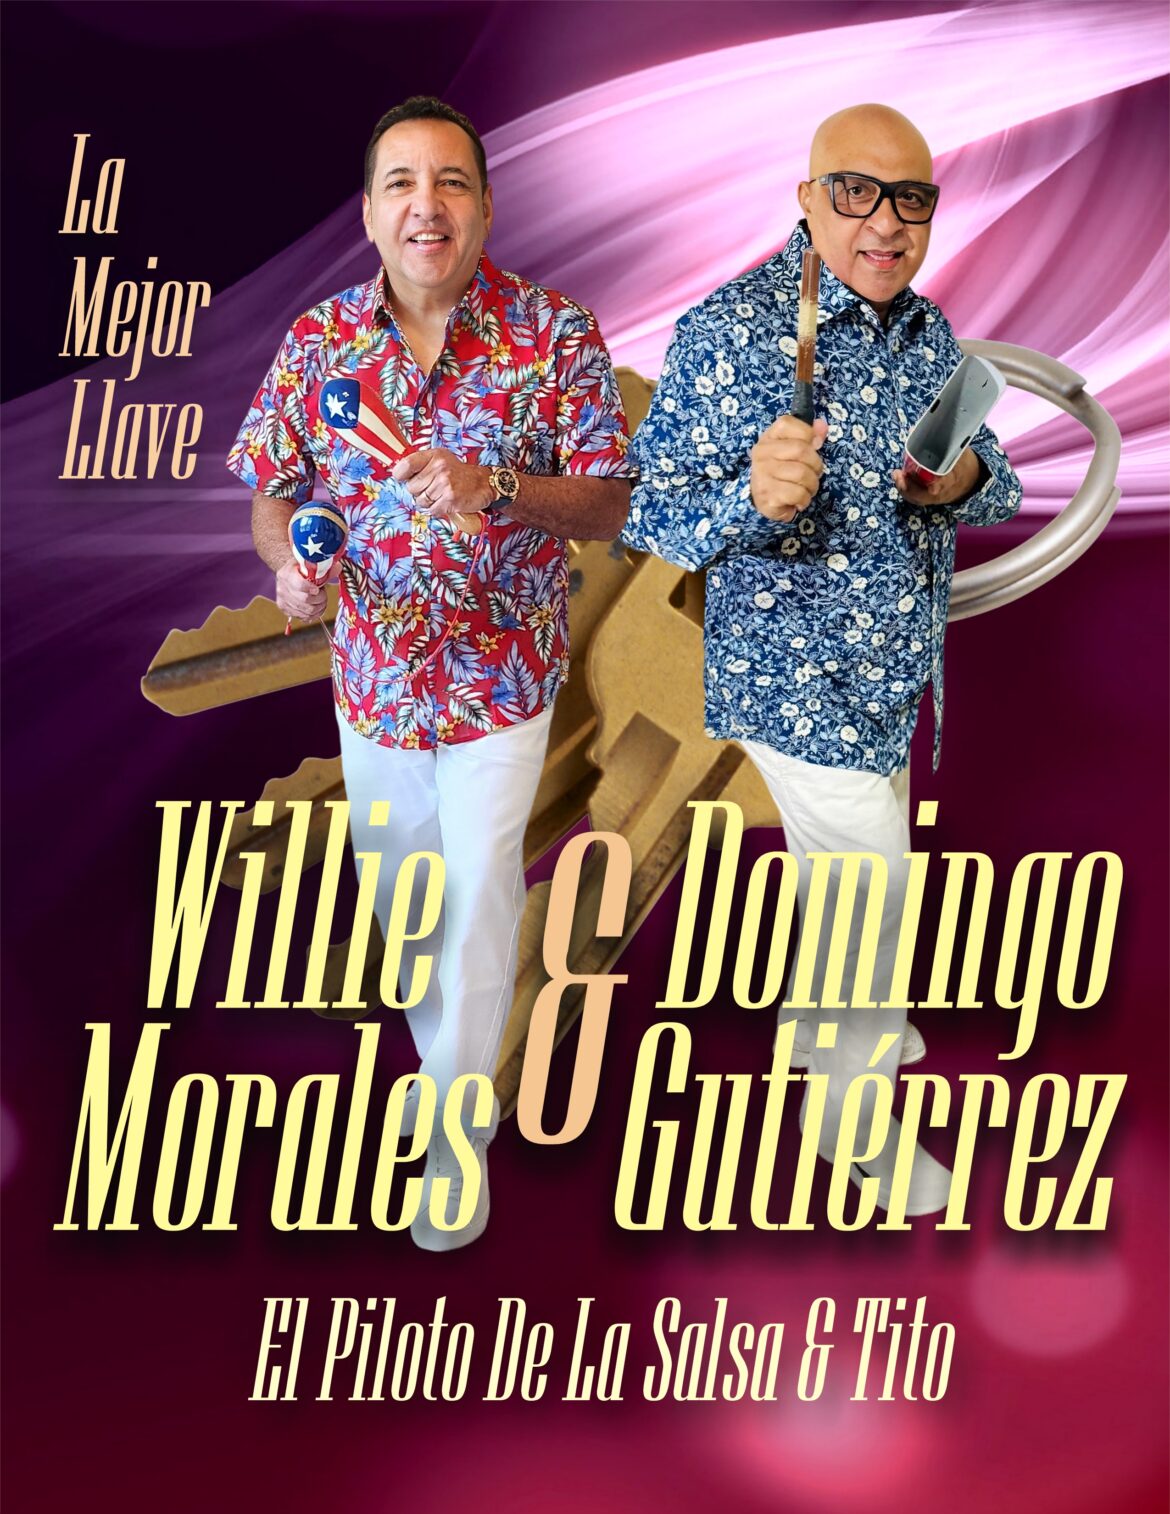 Willie Morales & Domingo “Tito” Gutiérrez “La Mejor Llave”